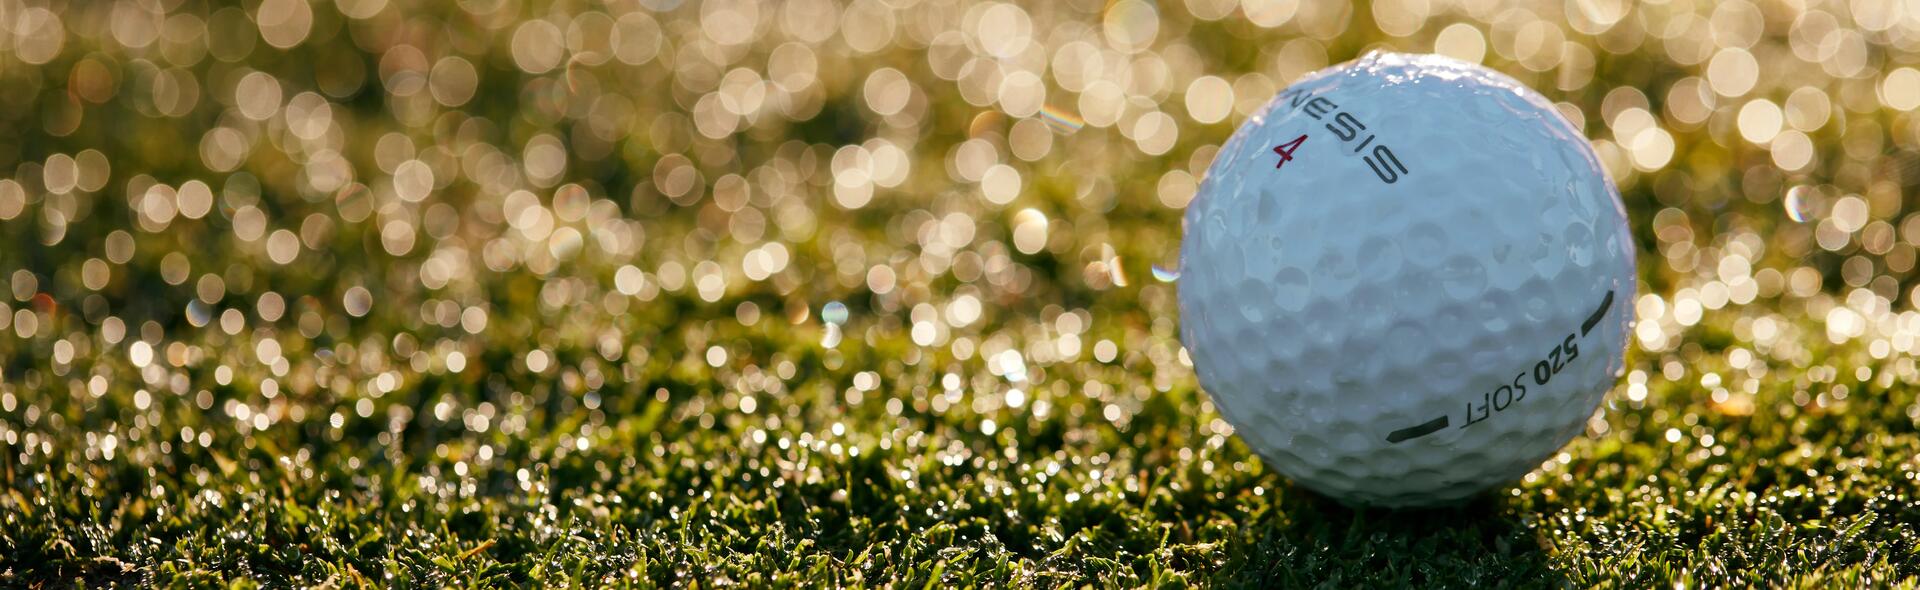 Come scegliere una pallina da Golf | DECATHLON